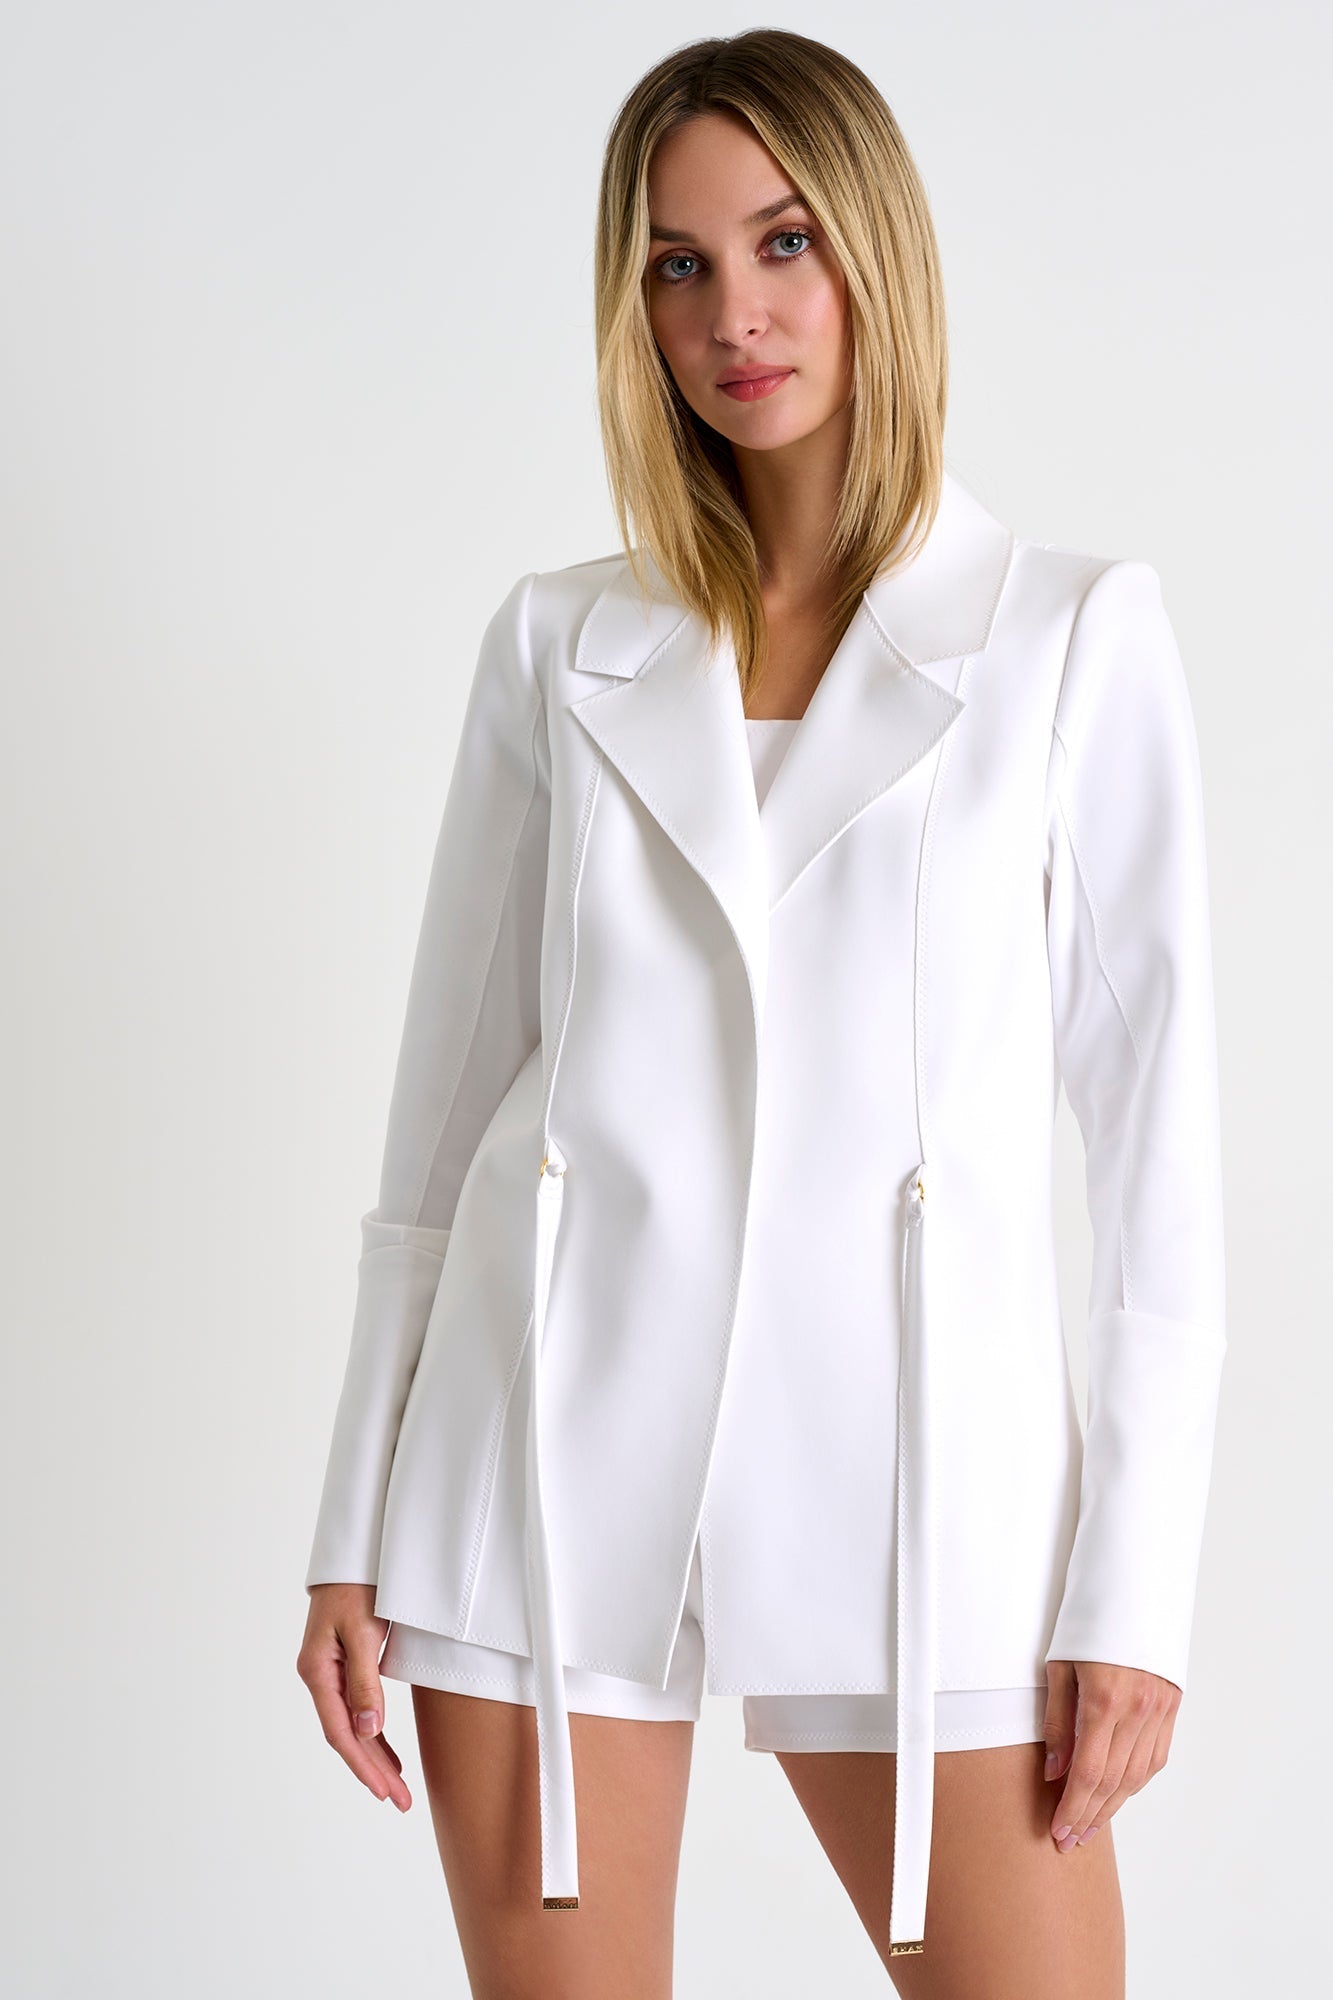 52227-78-000 - Structured 3D Jersey Blazer 02 / 000 White / 75% POLYAMIDE, 25% ELASTANE